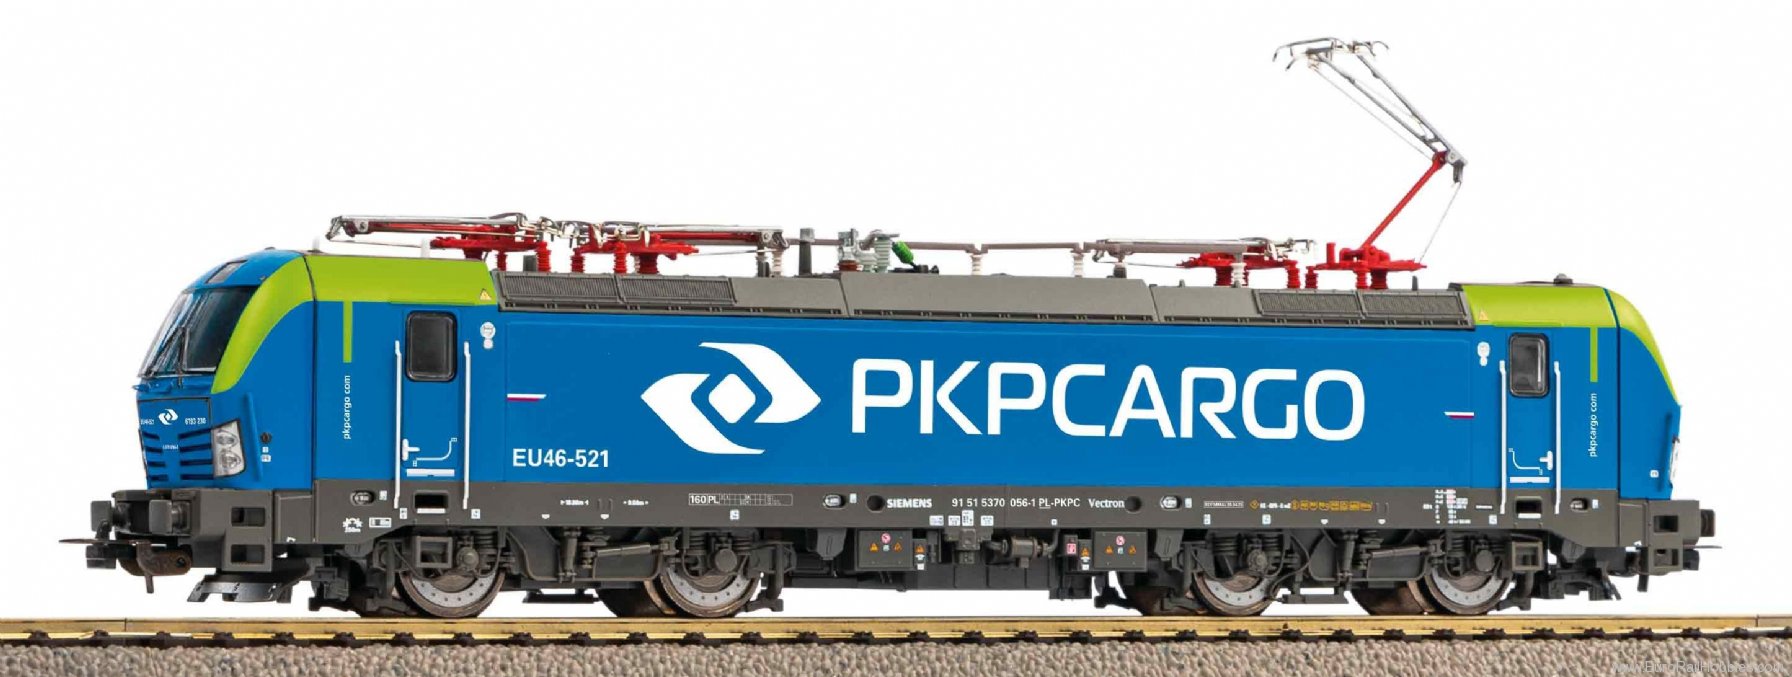 Piko 21651 Sound electric locomotive Vectron EU46 PKP Ca